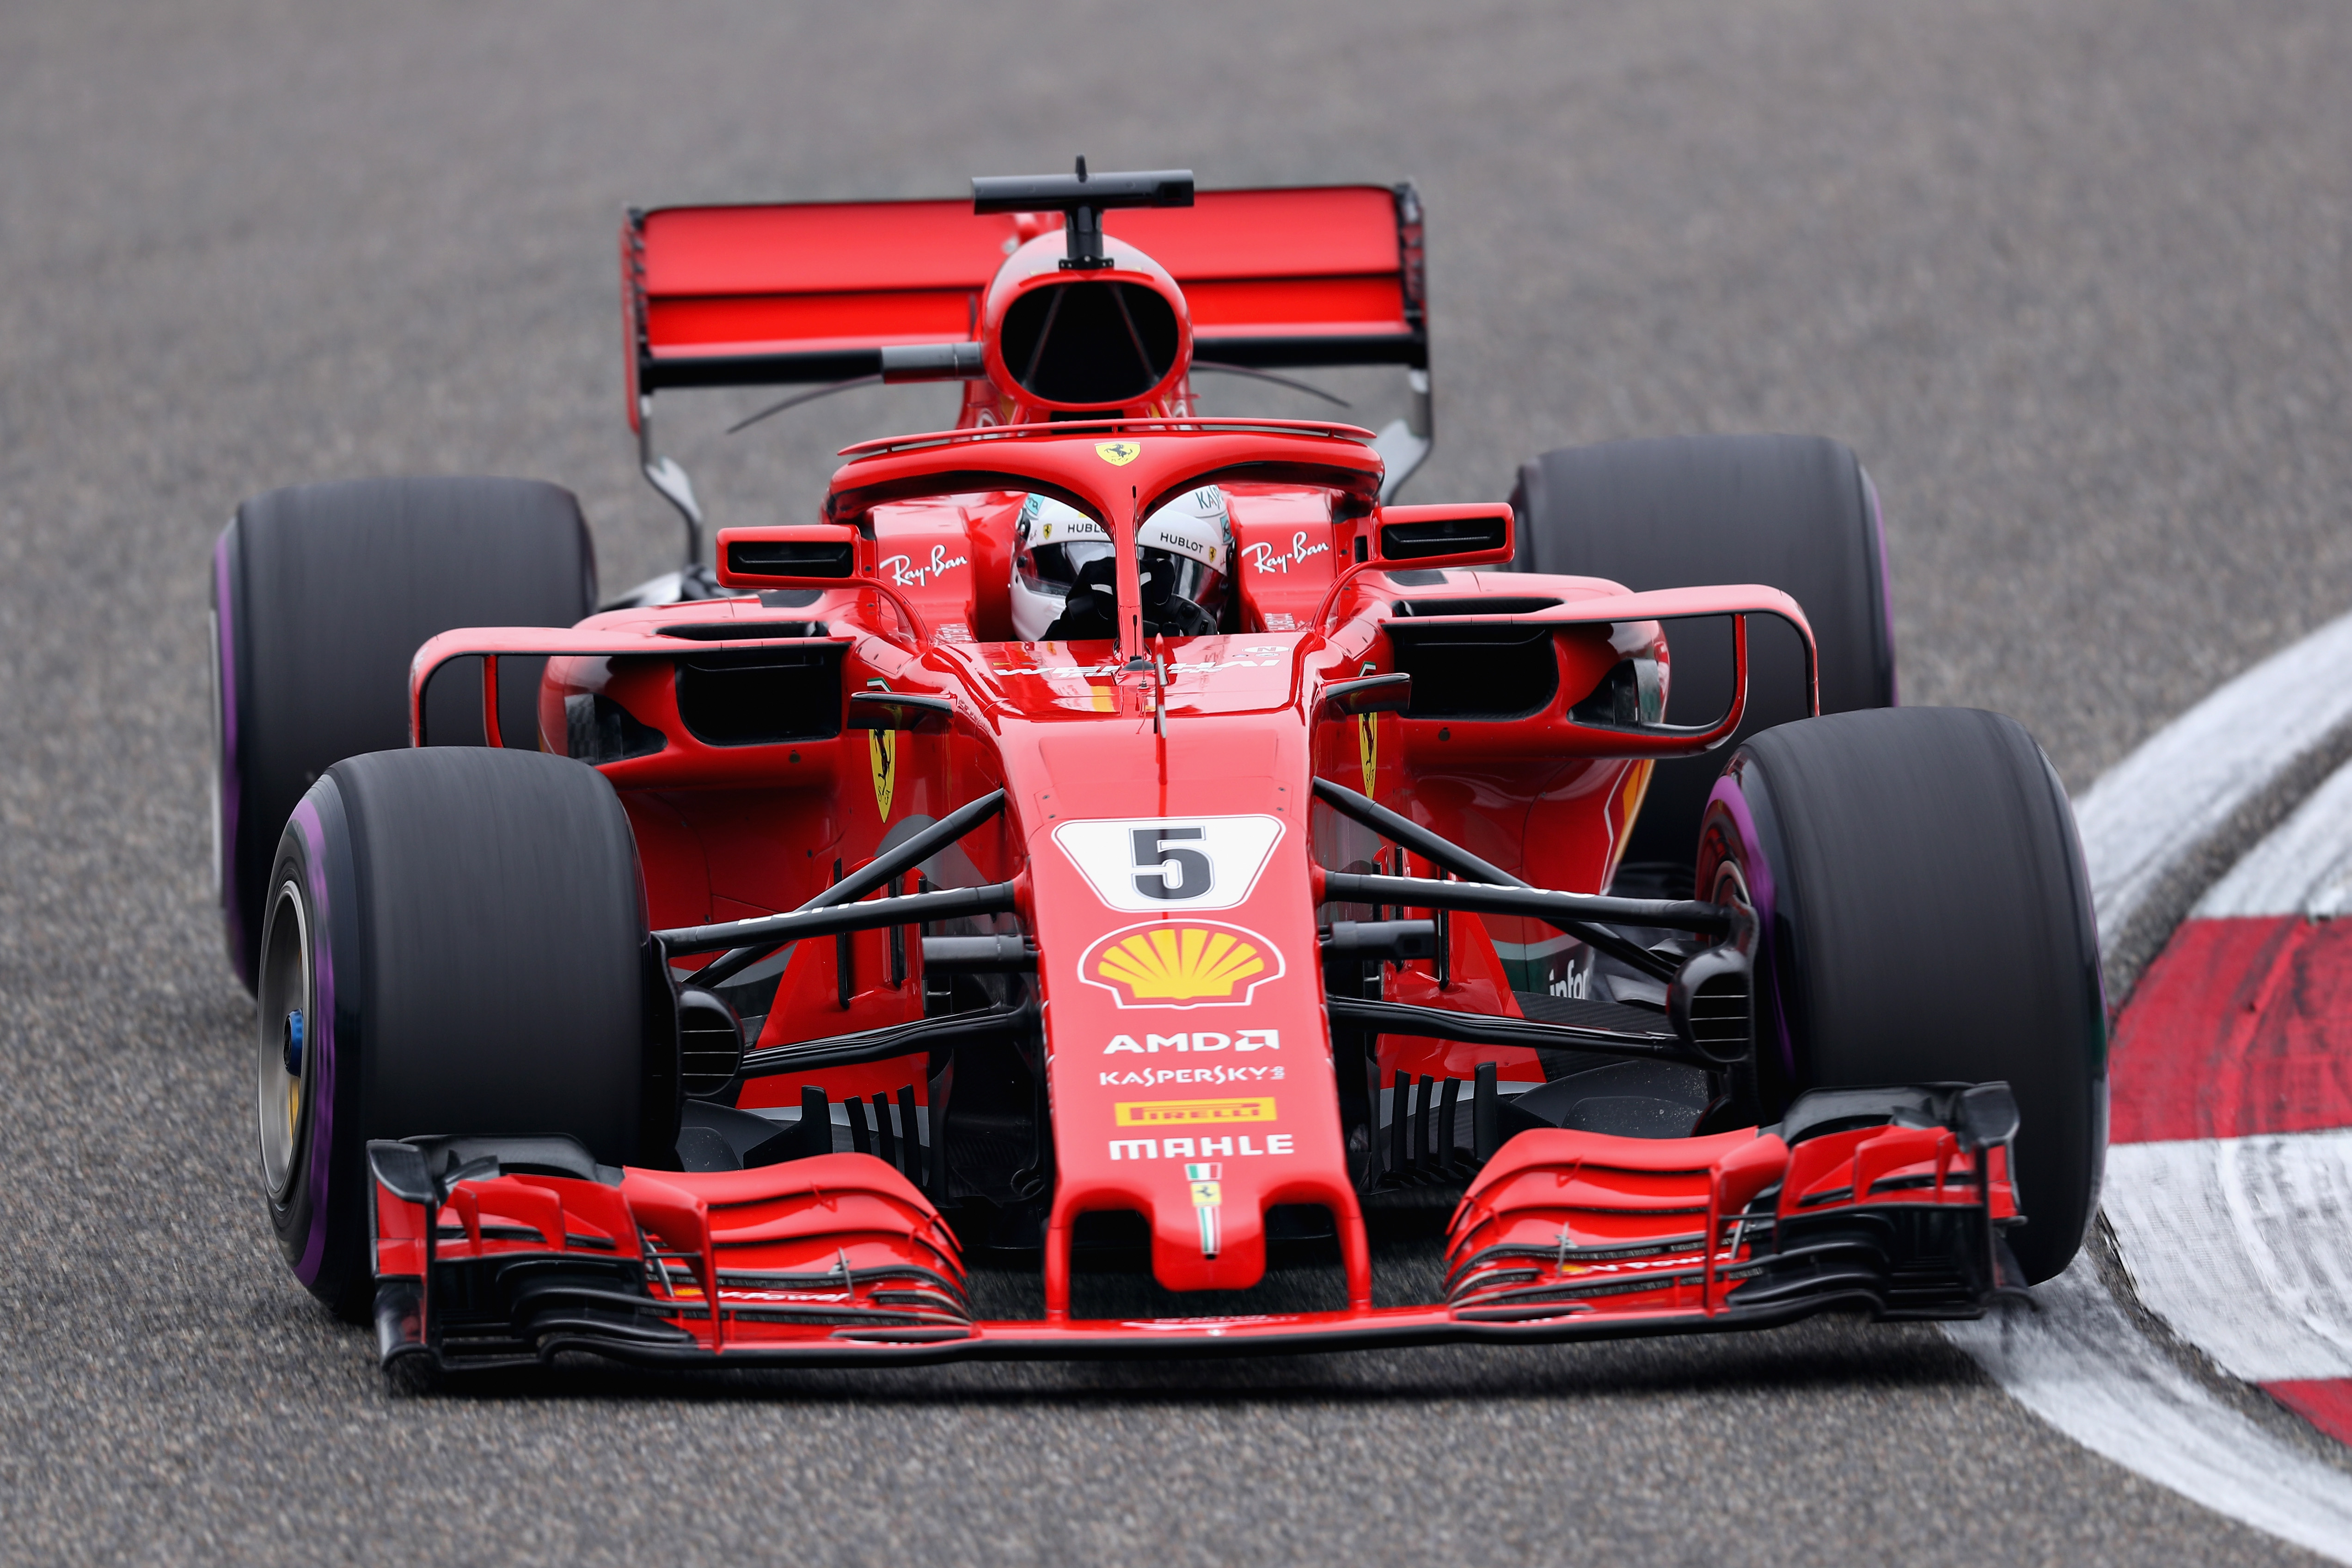 Sebastian Vettel partirà in pole position nel Gran Premio di Cina di Formula 1